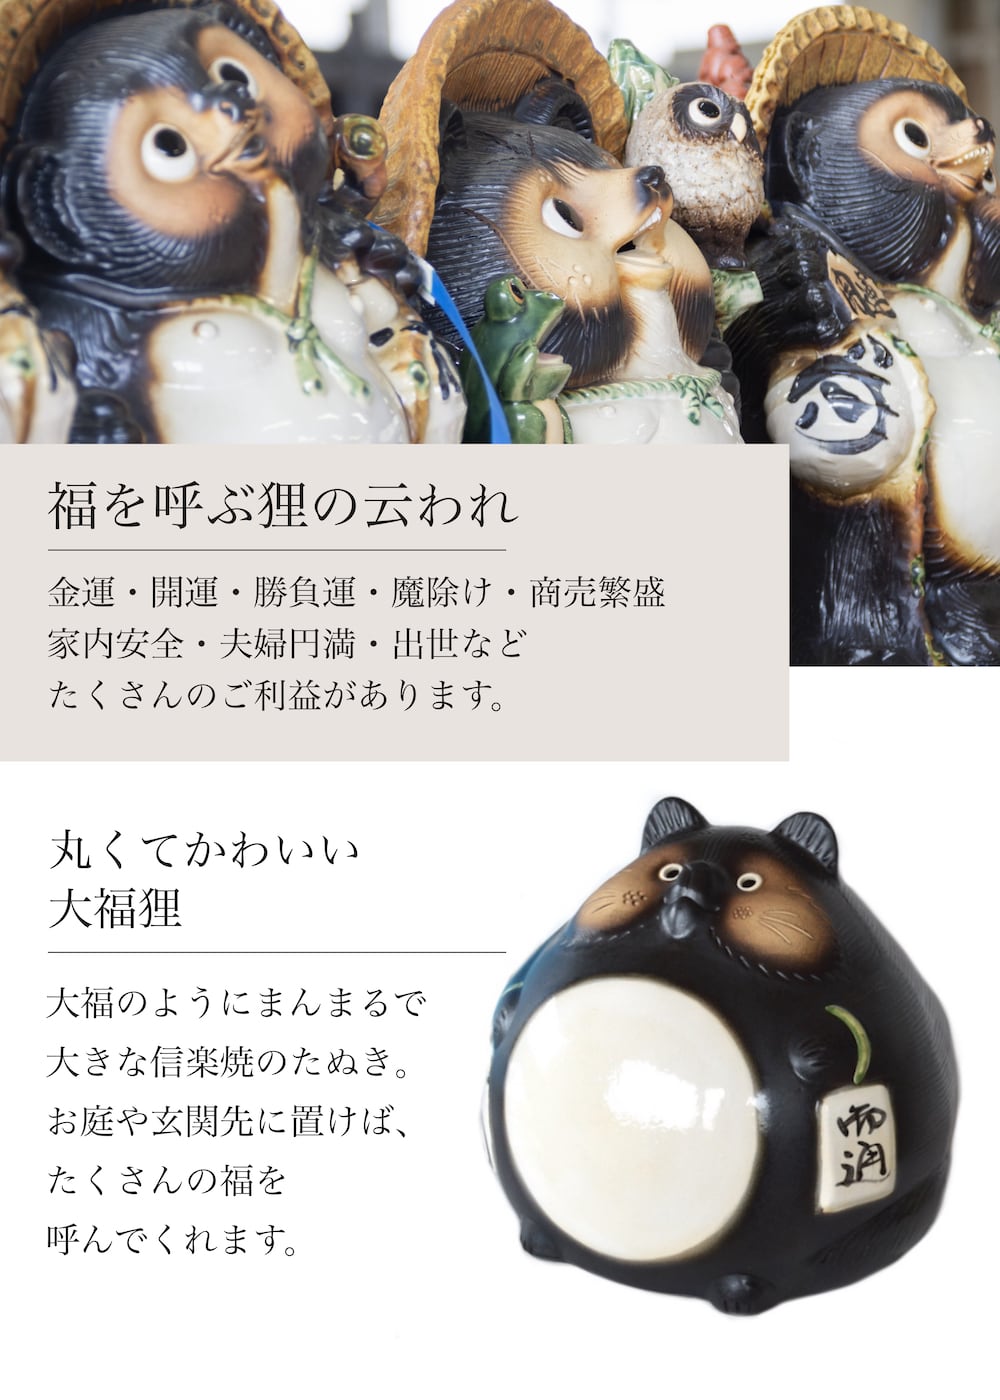 福々狸 信楽焼 たぬき 陶器 狸 置物 タヌキ 開店祝い 新築祝い 引越し祝い